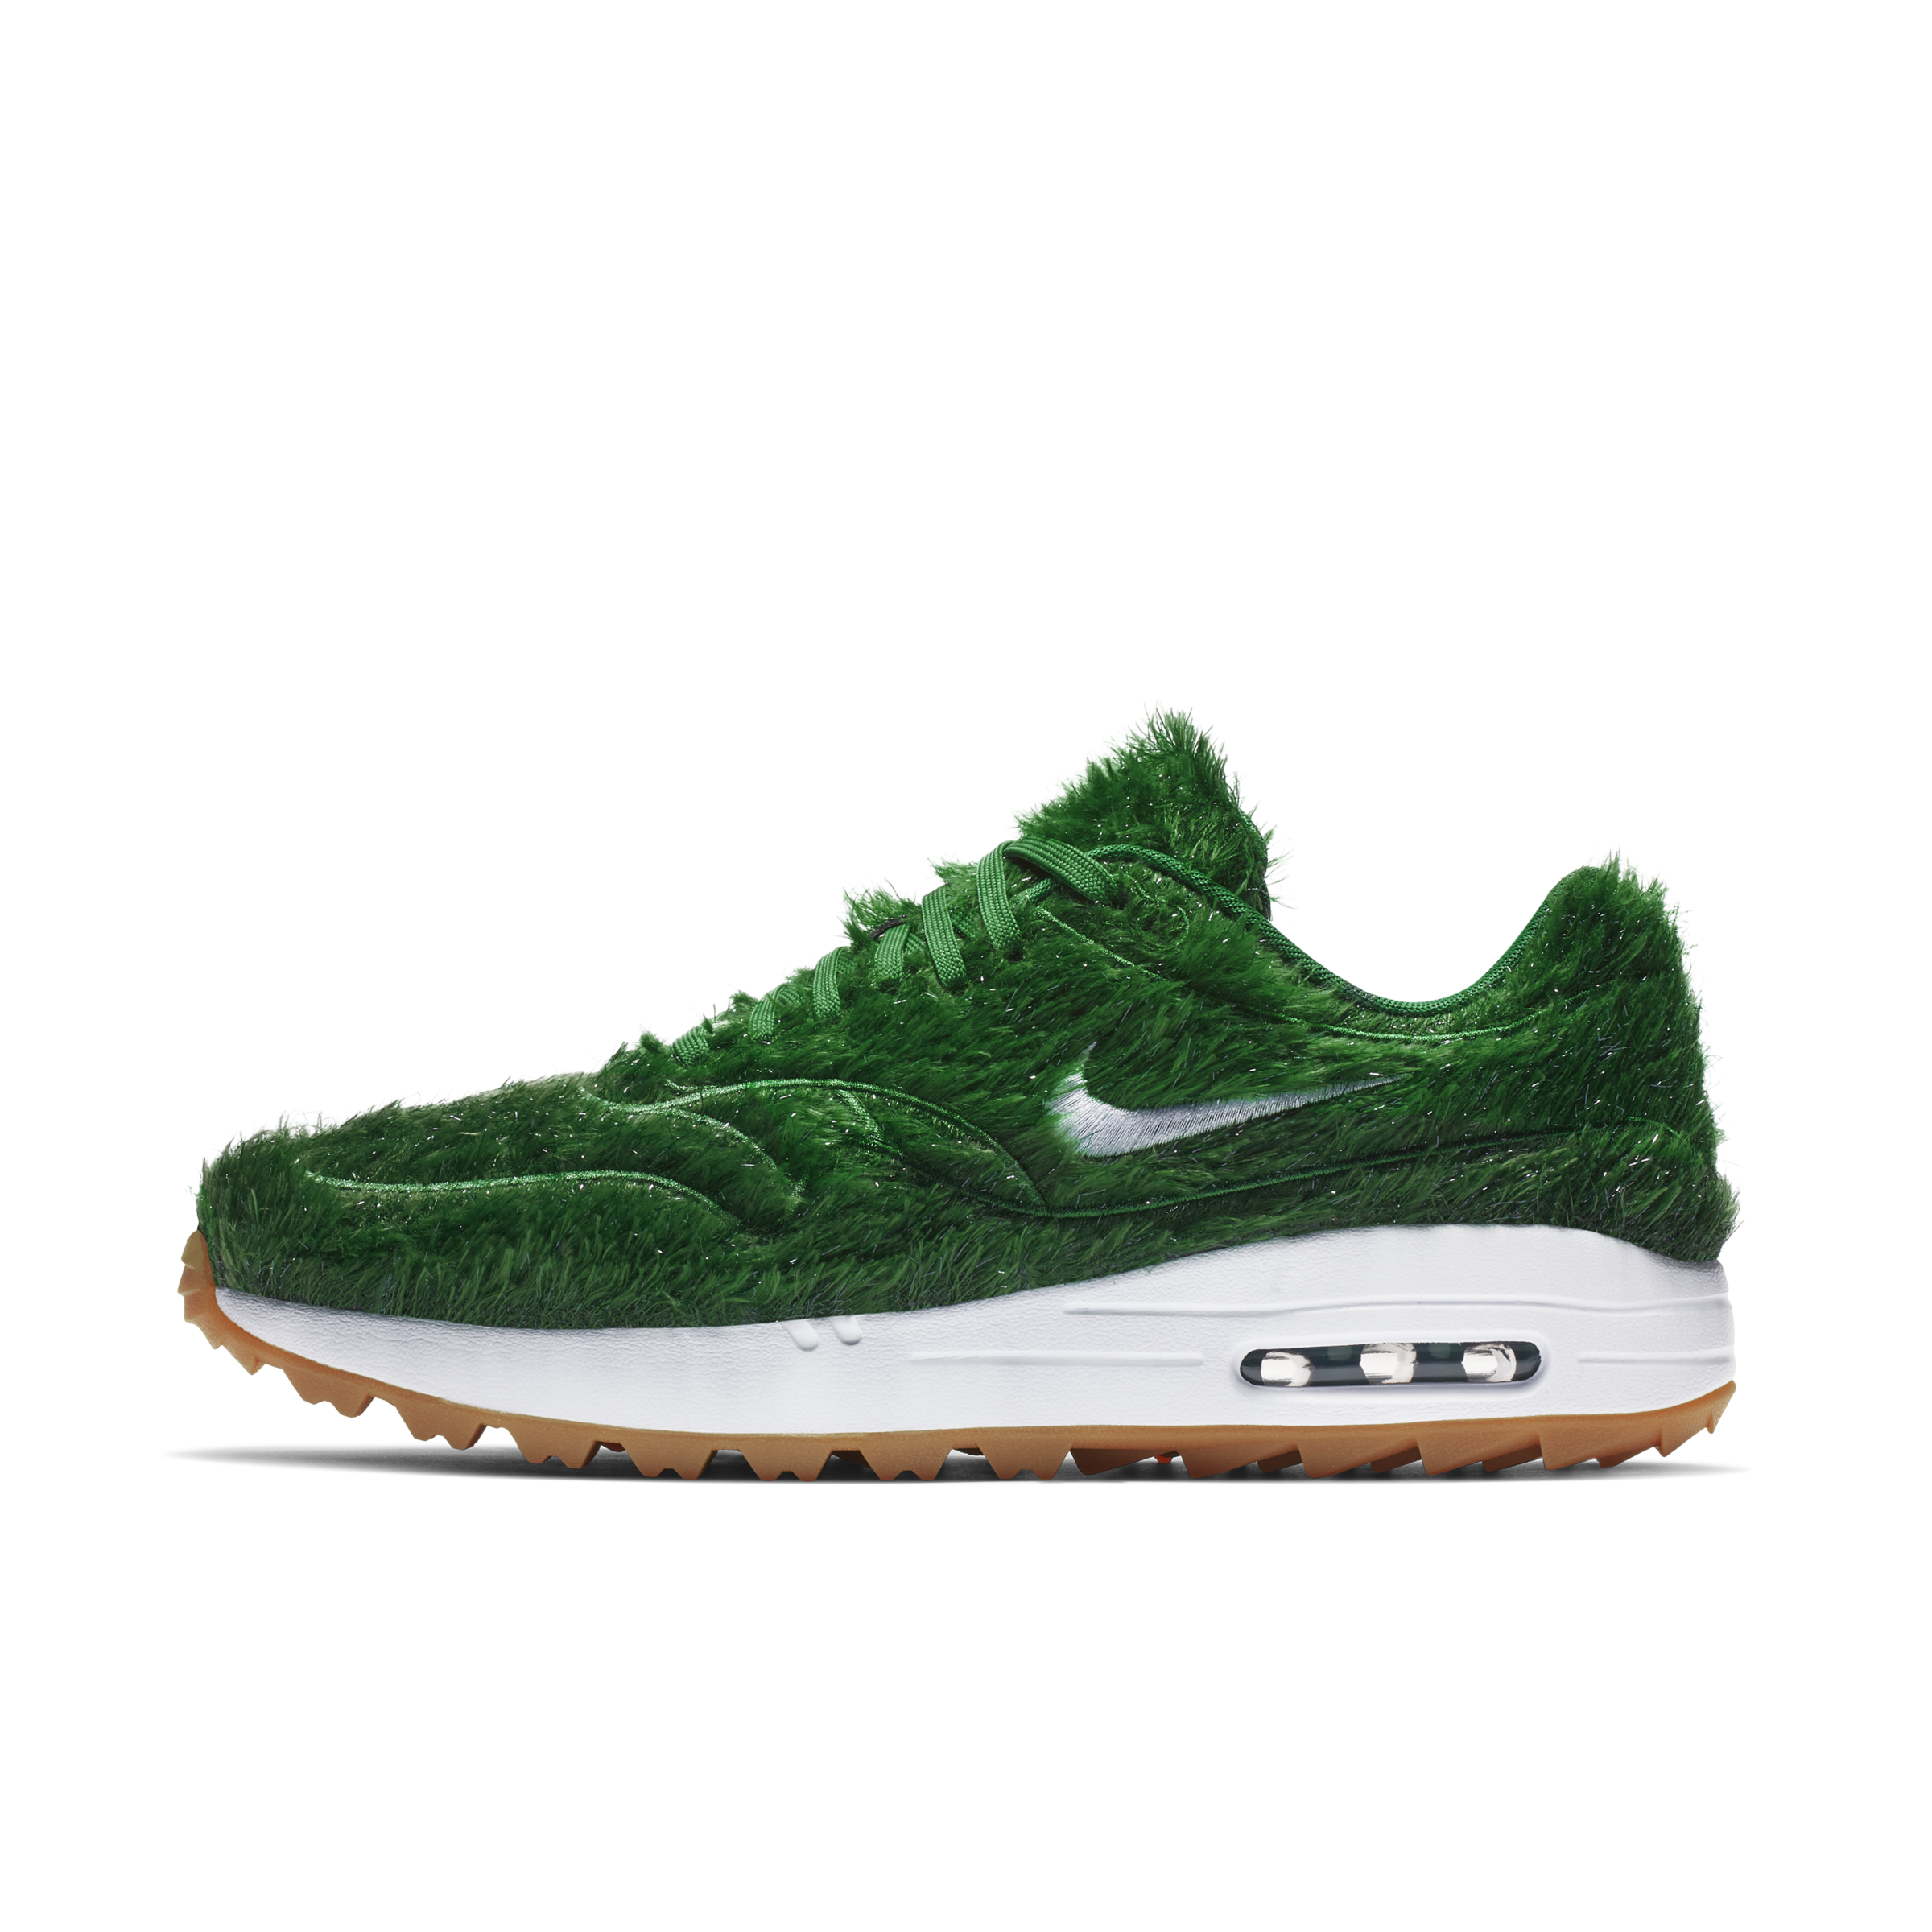 air max 1 golf shoes grass